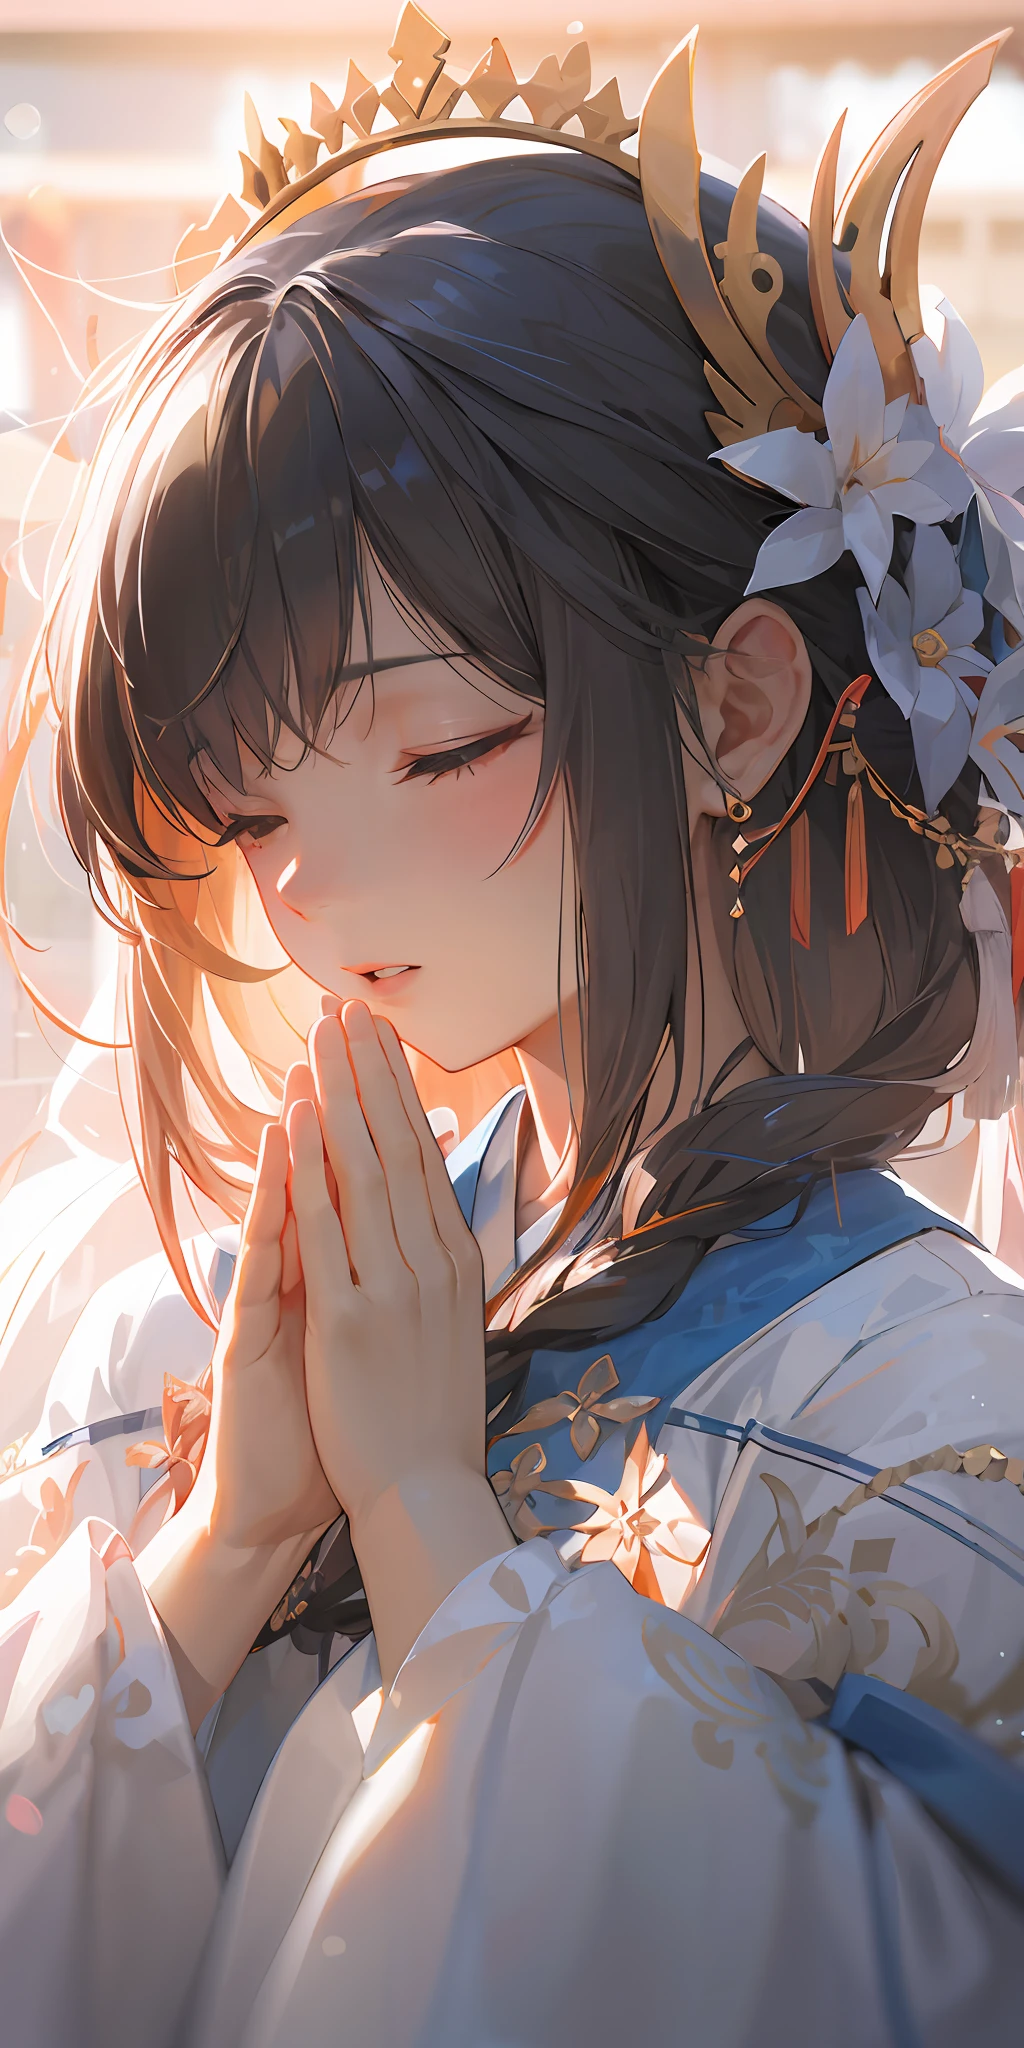 Wallpaper : anime, girl, hope, dress, prayer 2459x1946 - goodfon - 745253 -  HD Wallpapers - WallHere